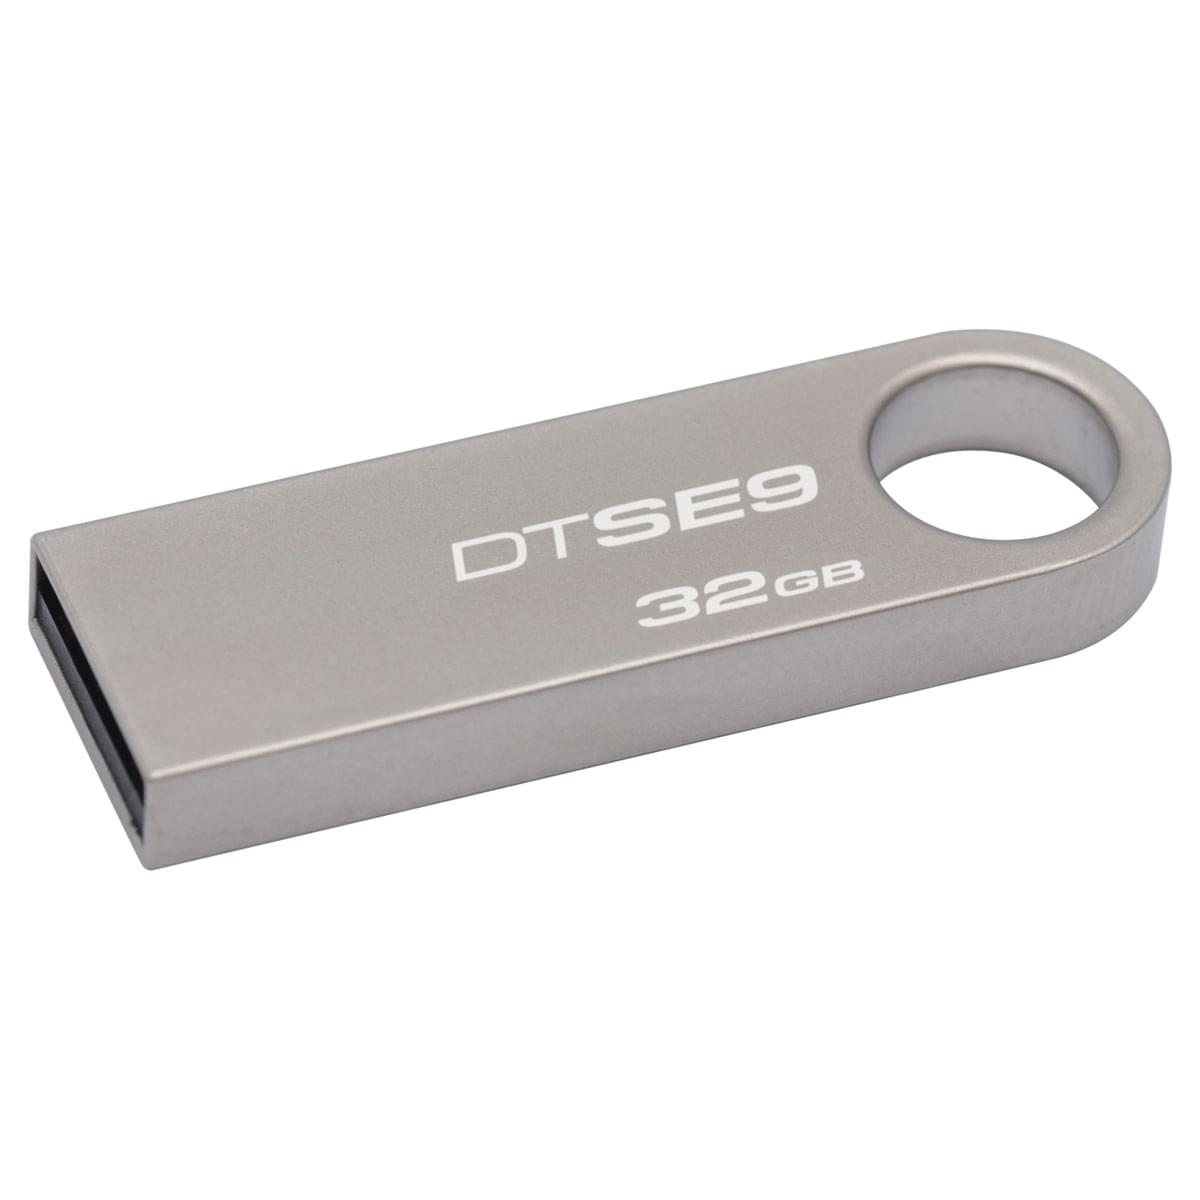 Kingston 32Go USB 2.0 Data SE9 - Clé USB Kingston - Cybertek.fr - 0